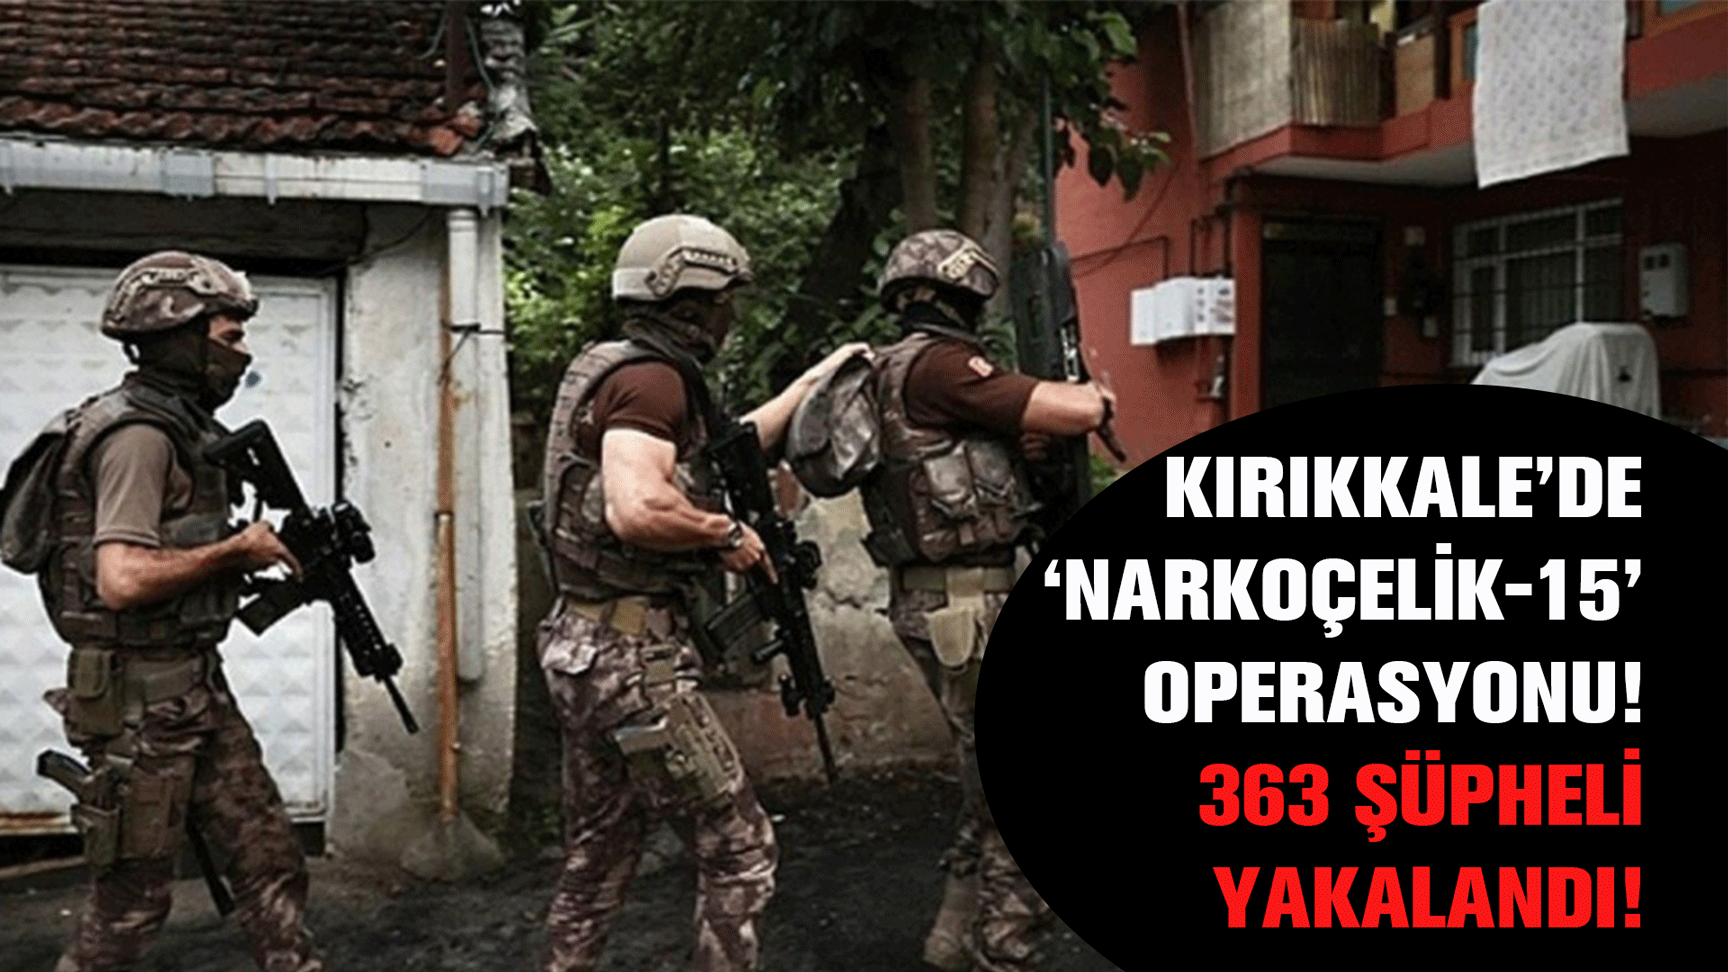 Kırıkkale’de ‘Narkoçelik-15’ operasyonu! 363 şüpheli yakalandı!